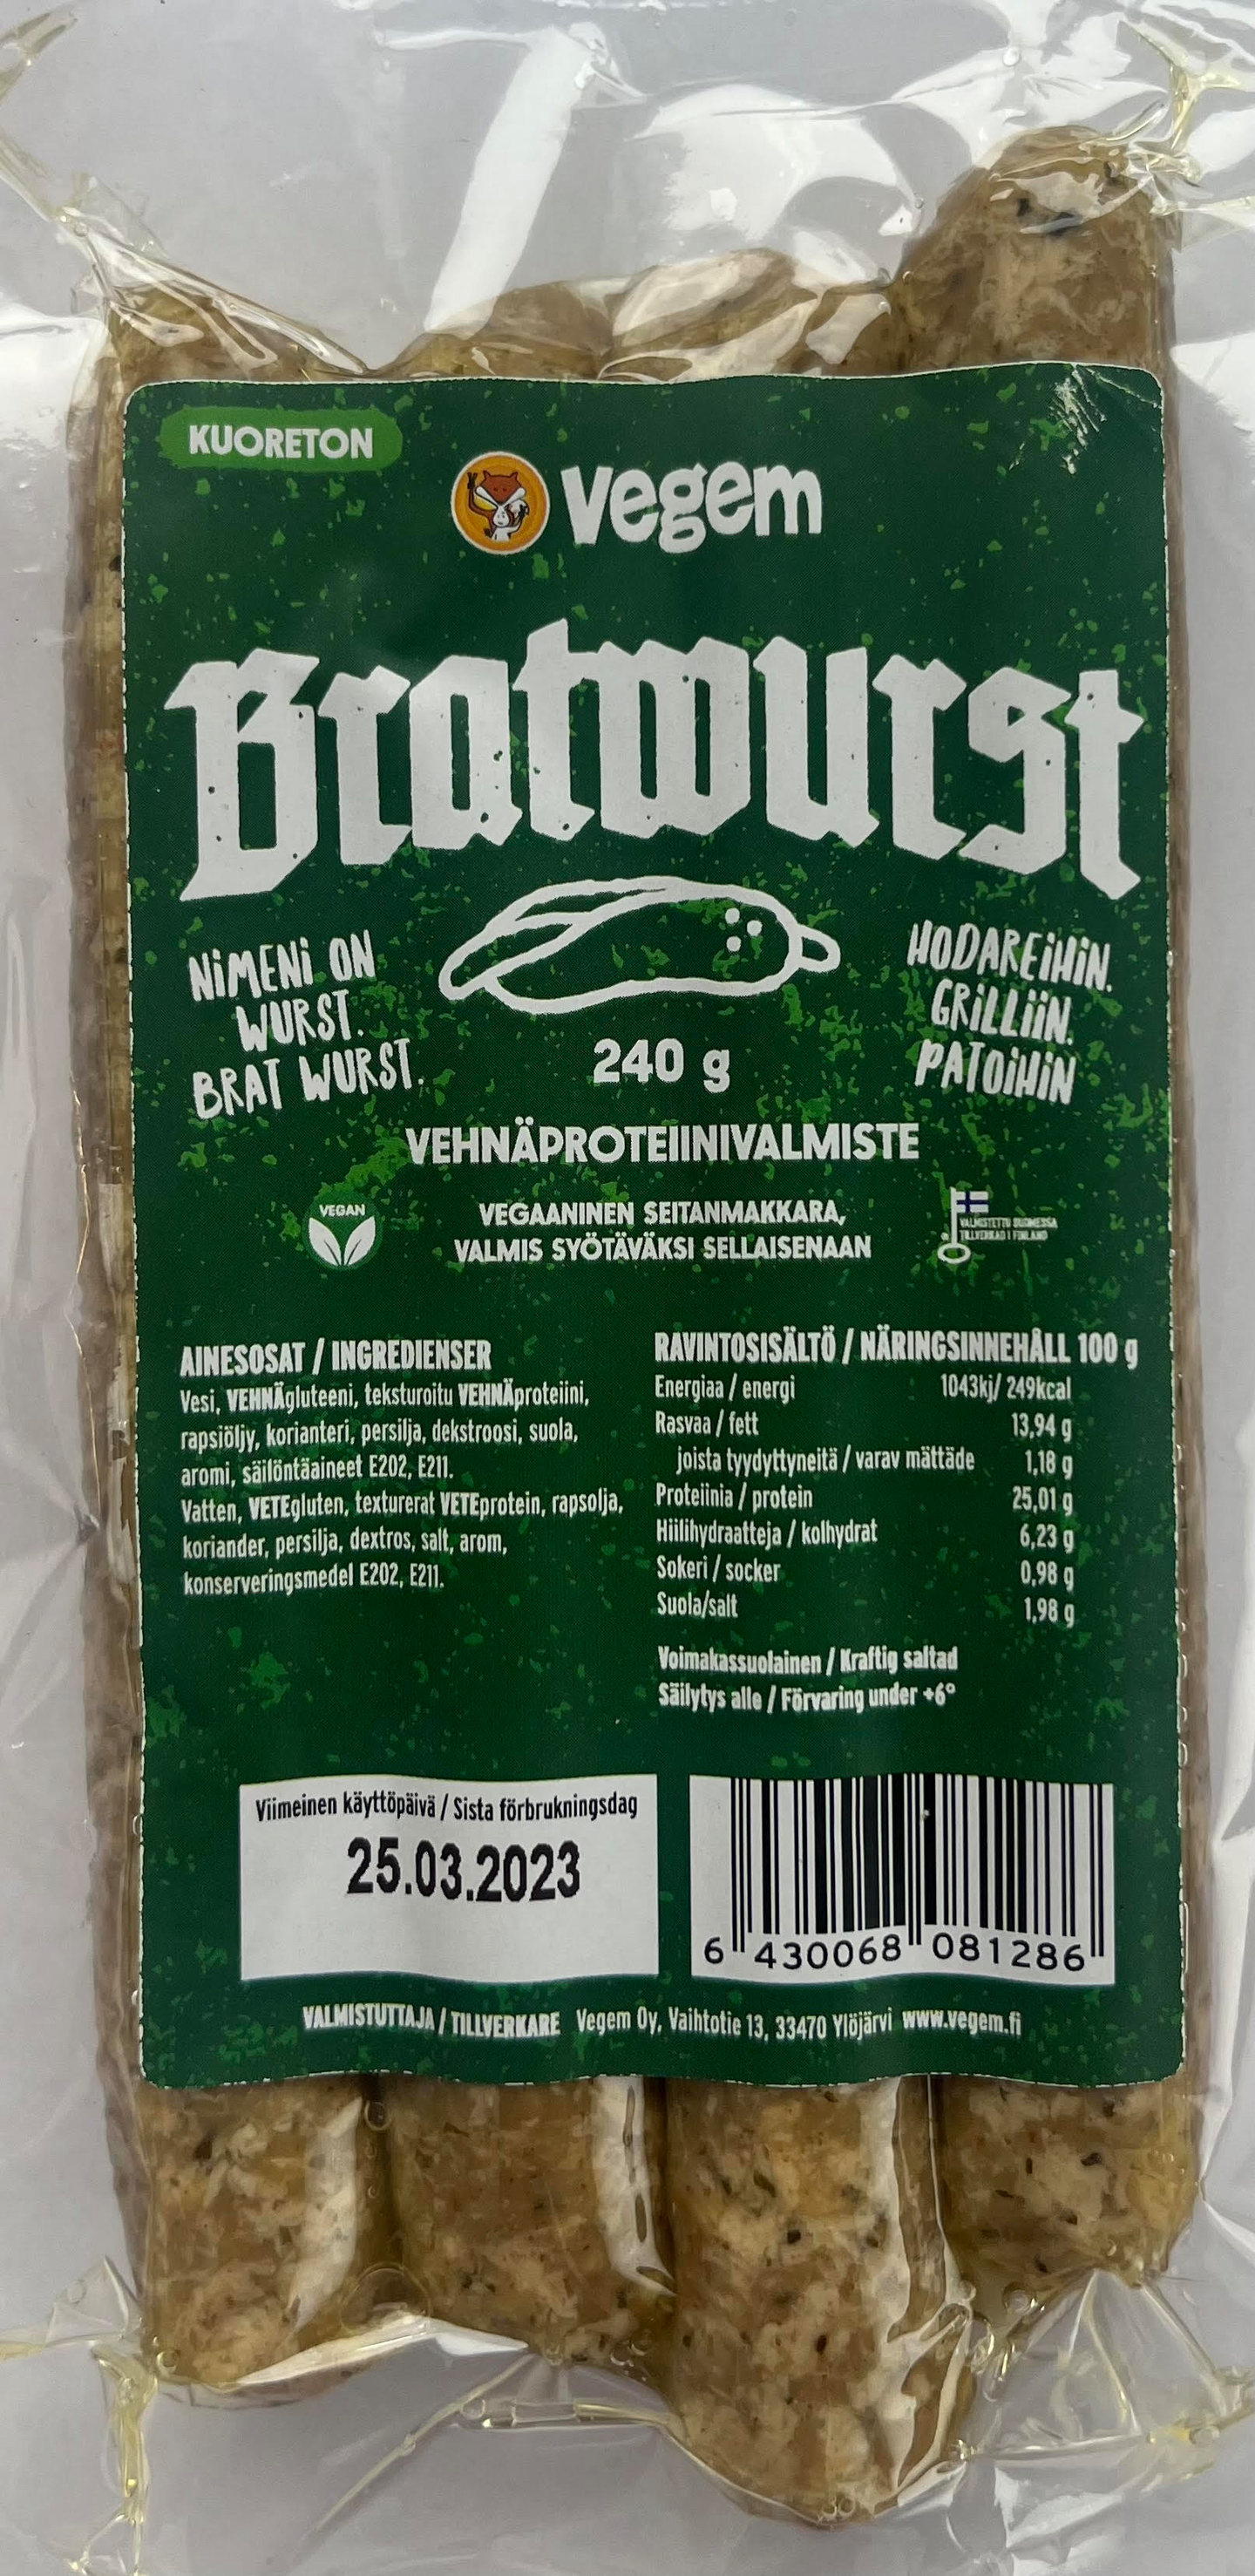 Vegem Bratwurst 240g